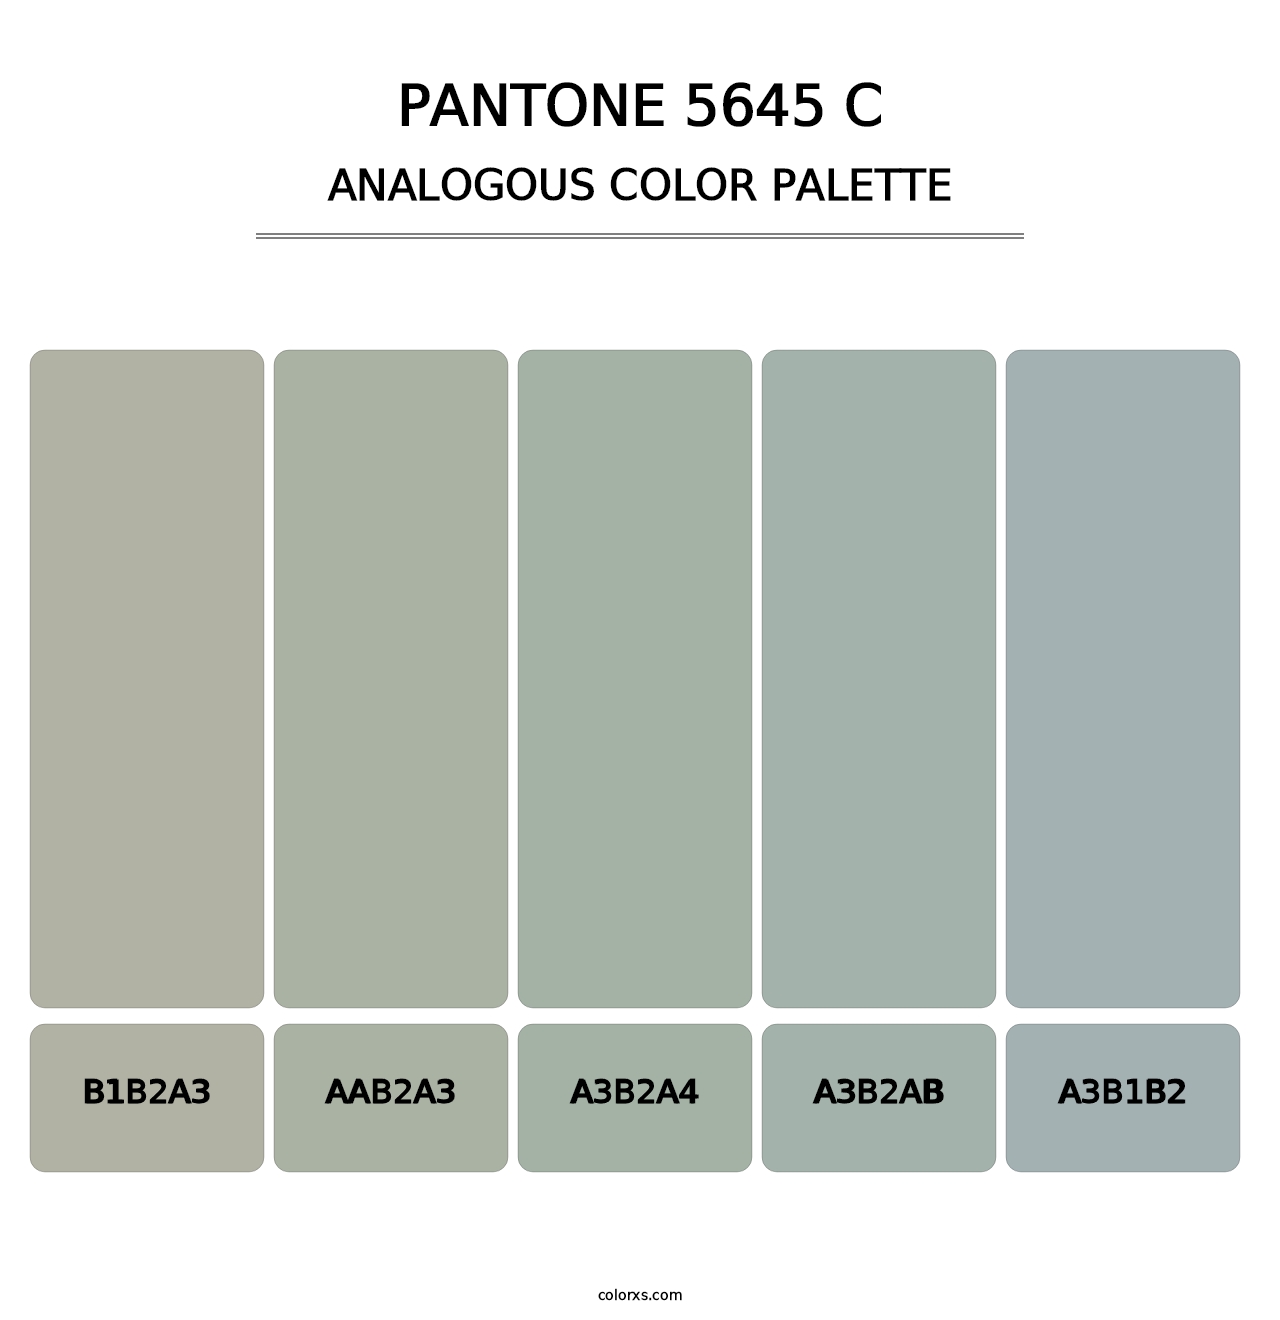 PANTONE 5645 C - Analogous Color Palette